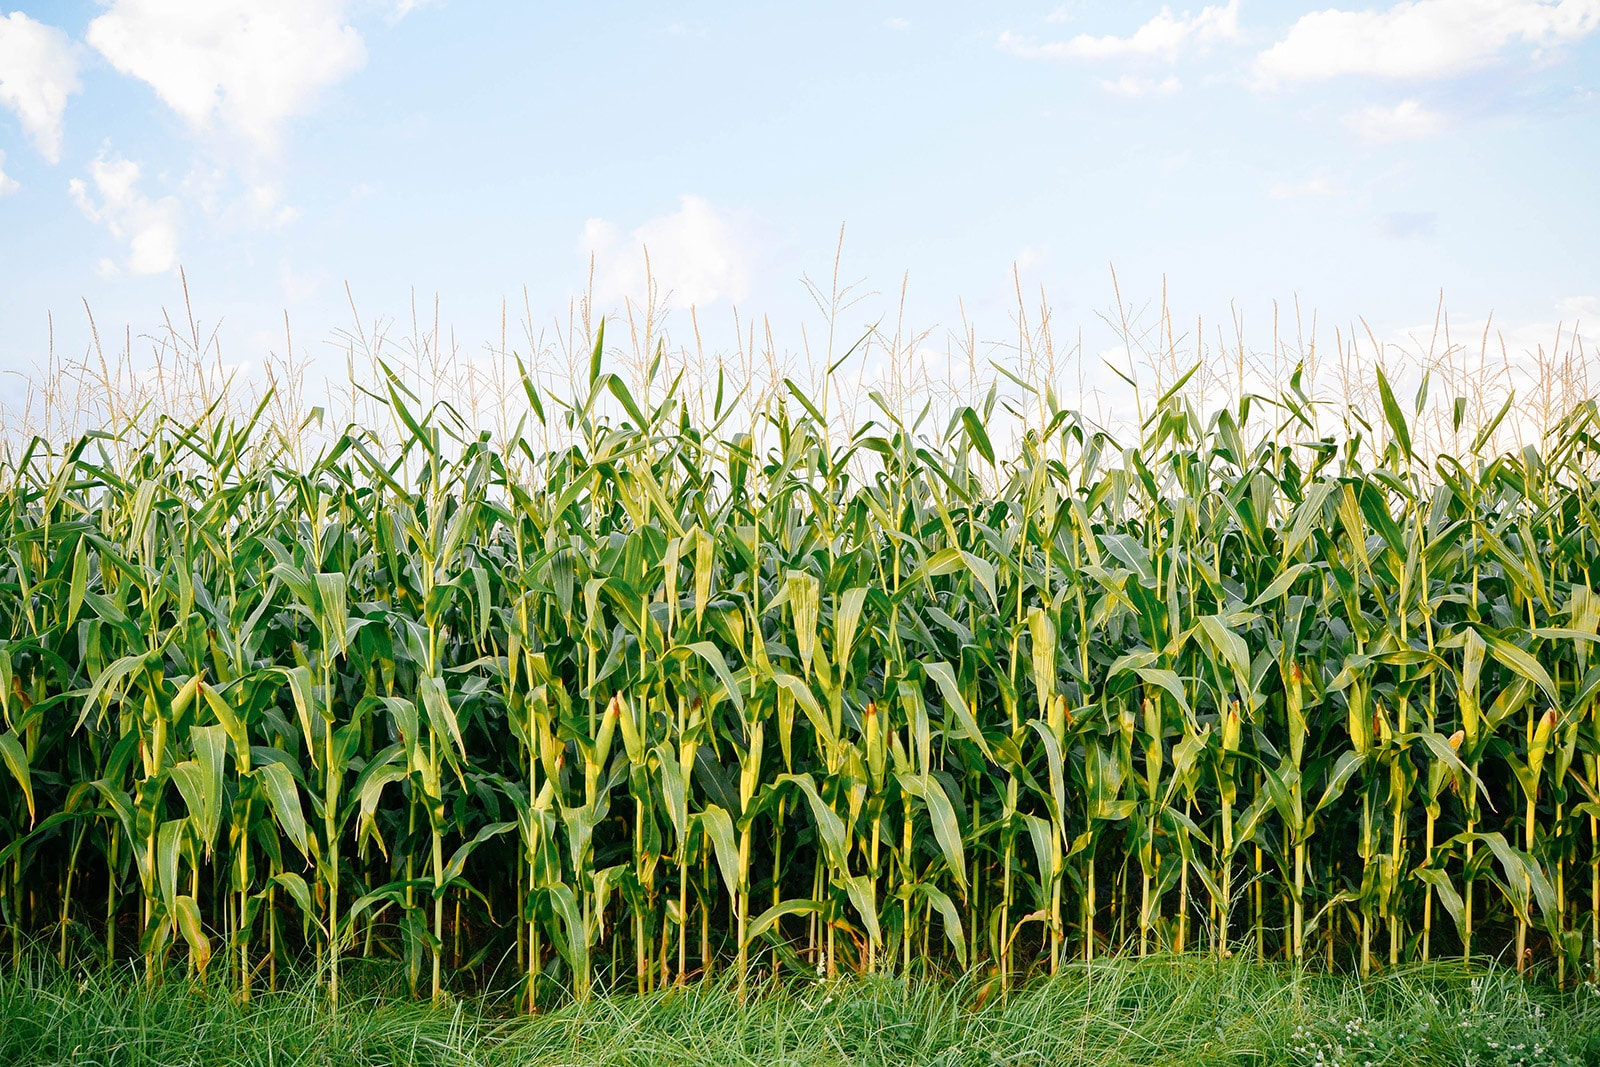 A field of tall corn stalks